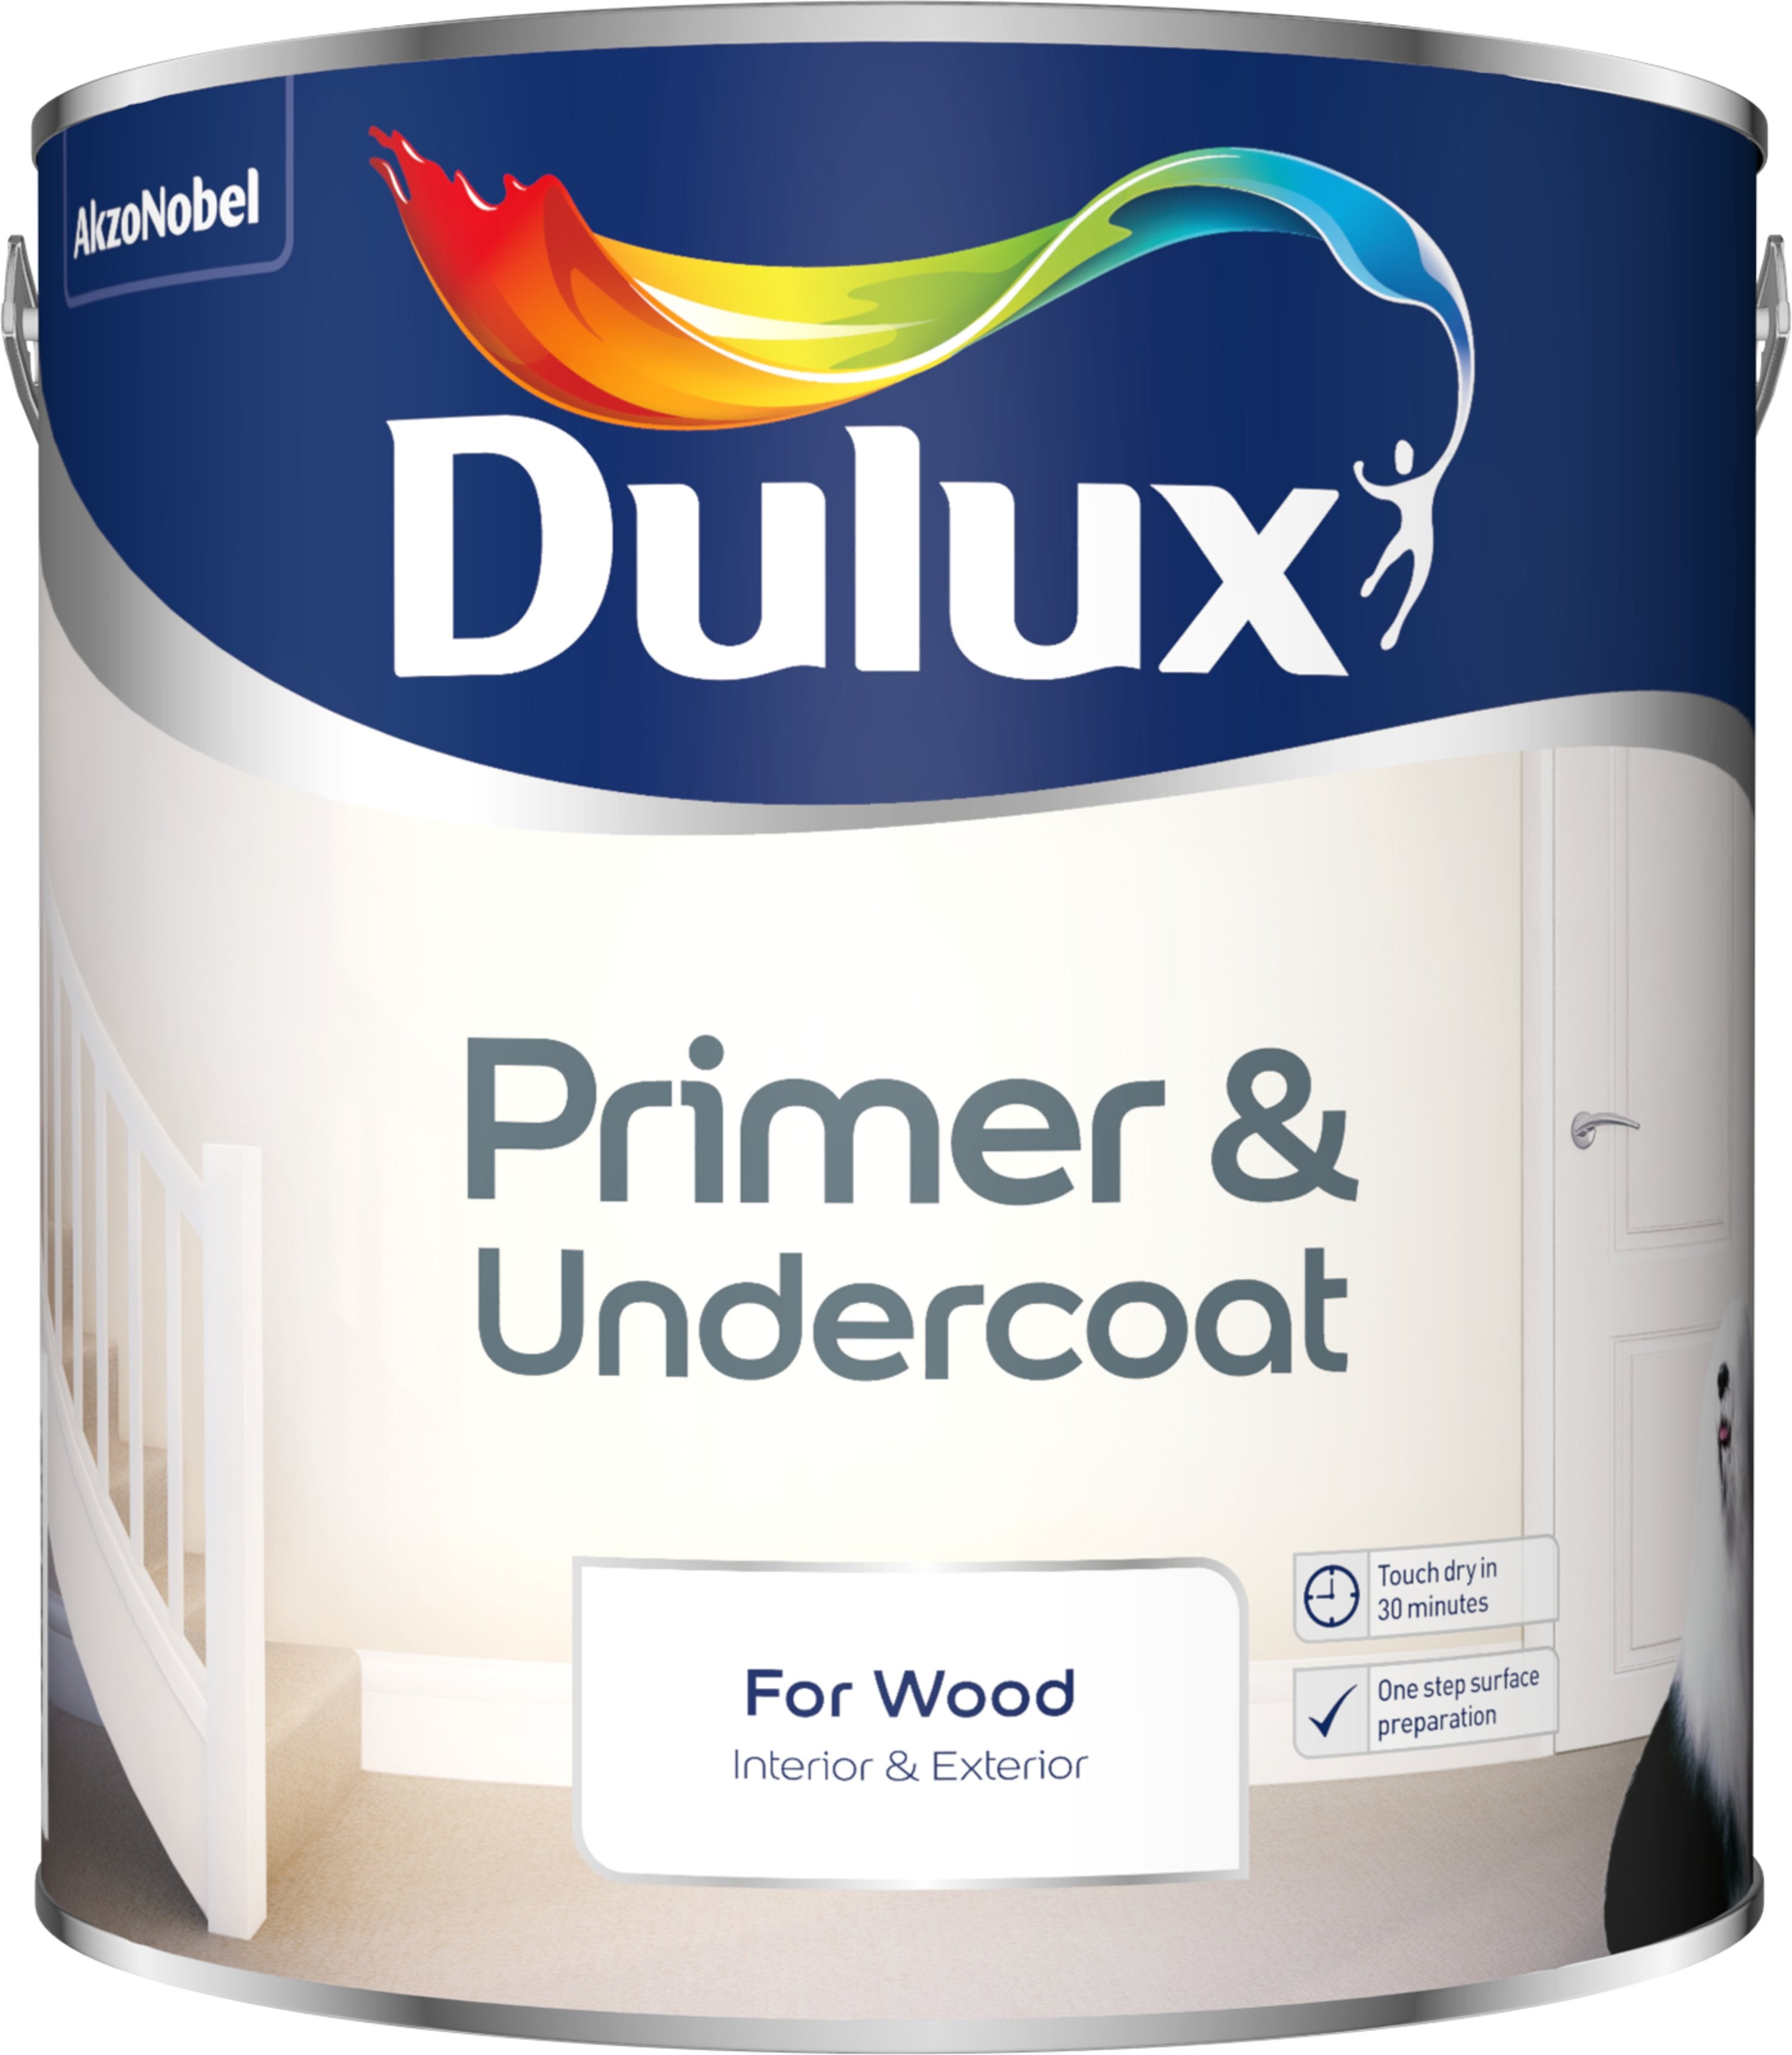 Dulux-Primer-&-Undercoat-Paint-For-Wood-2.5L